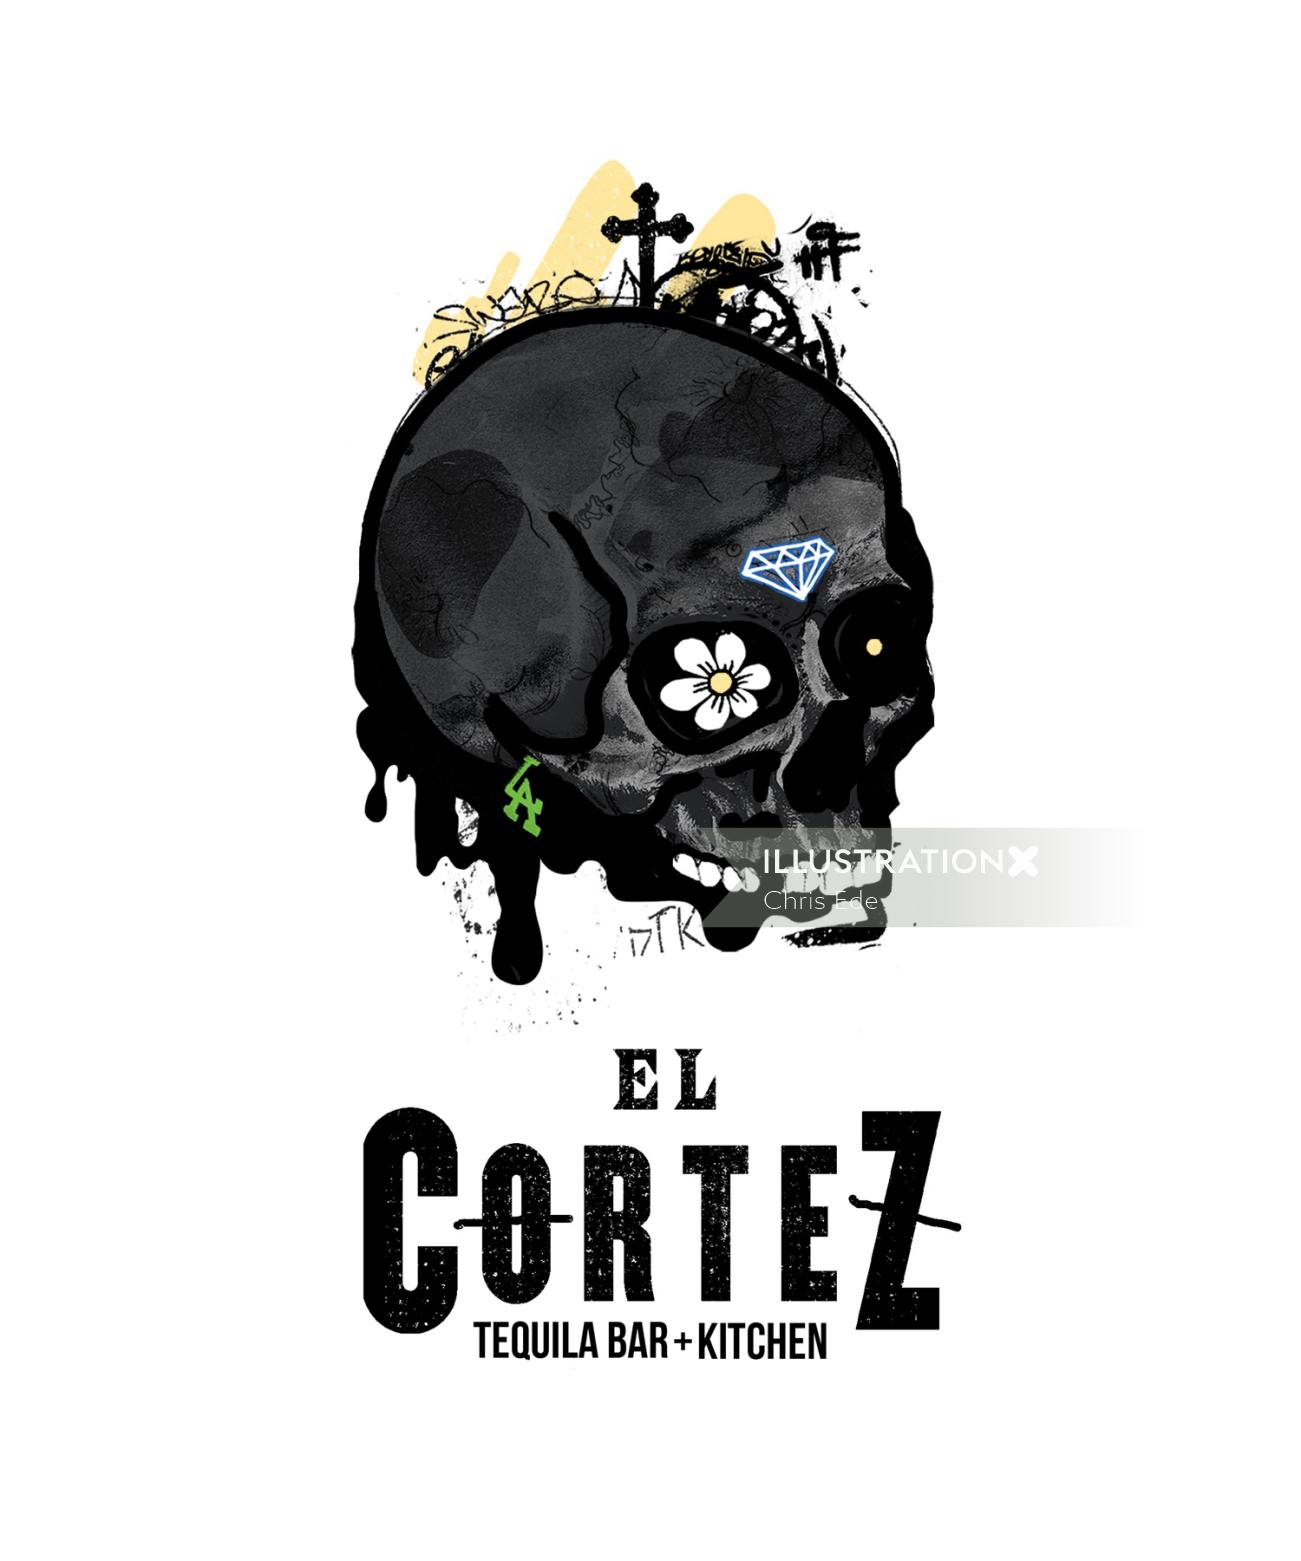 graffiti art of El cortez skull 